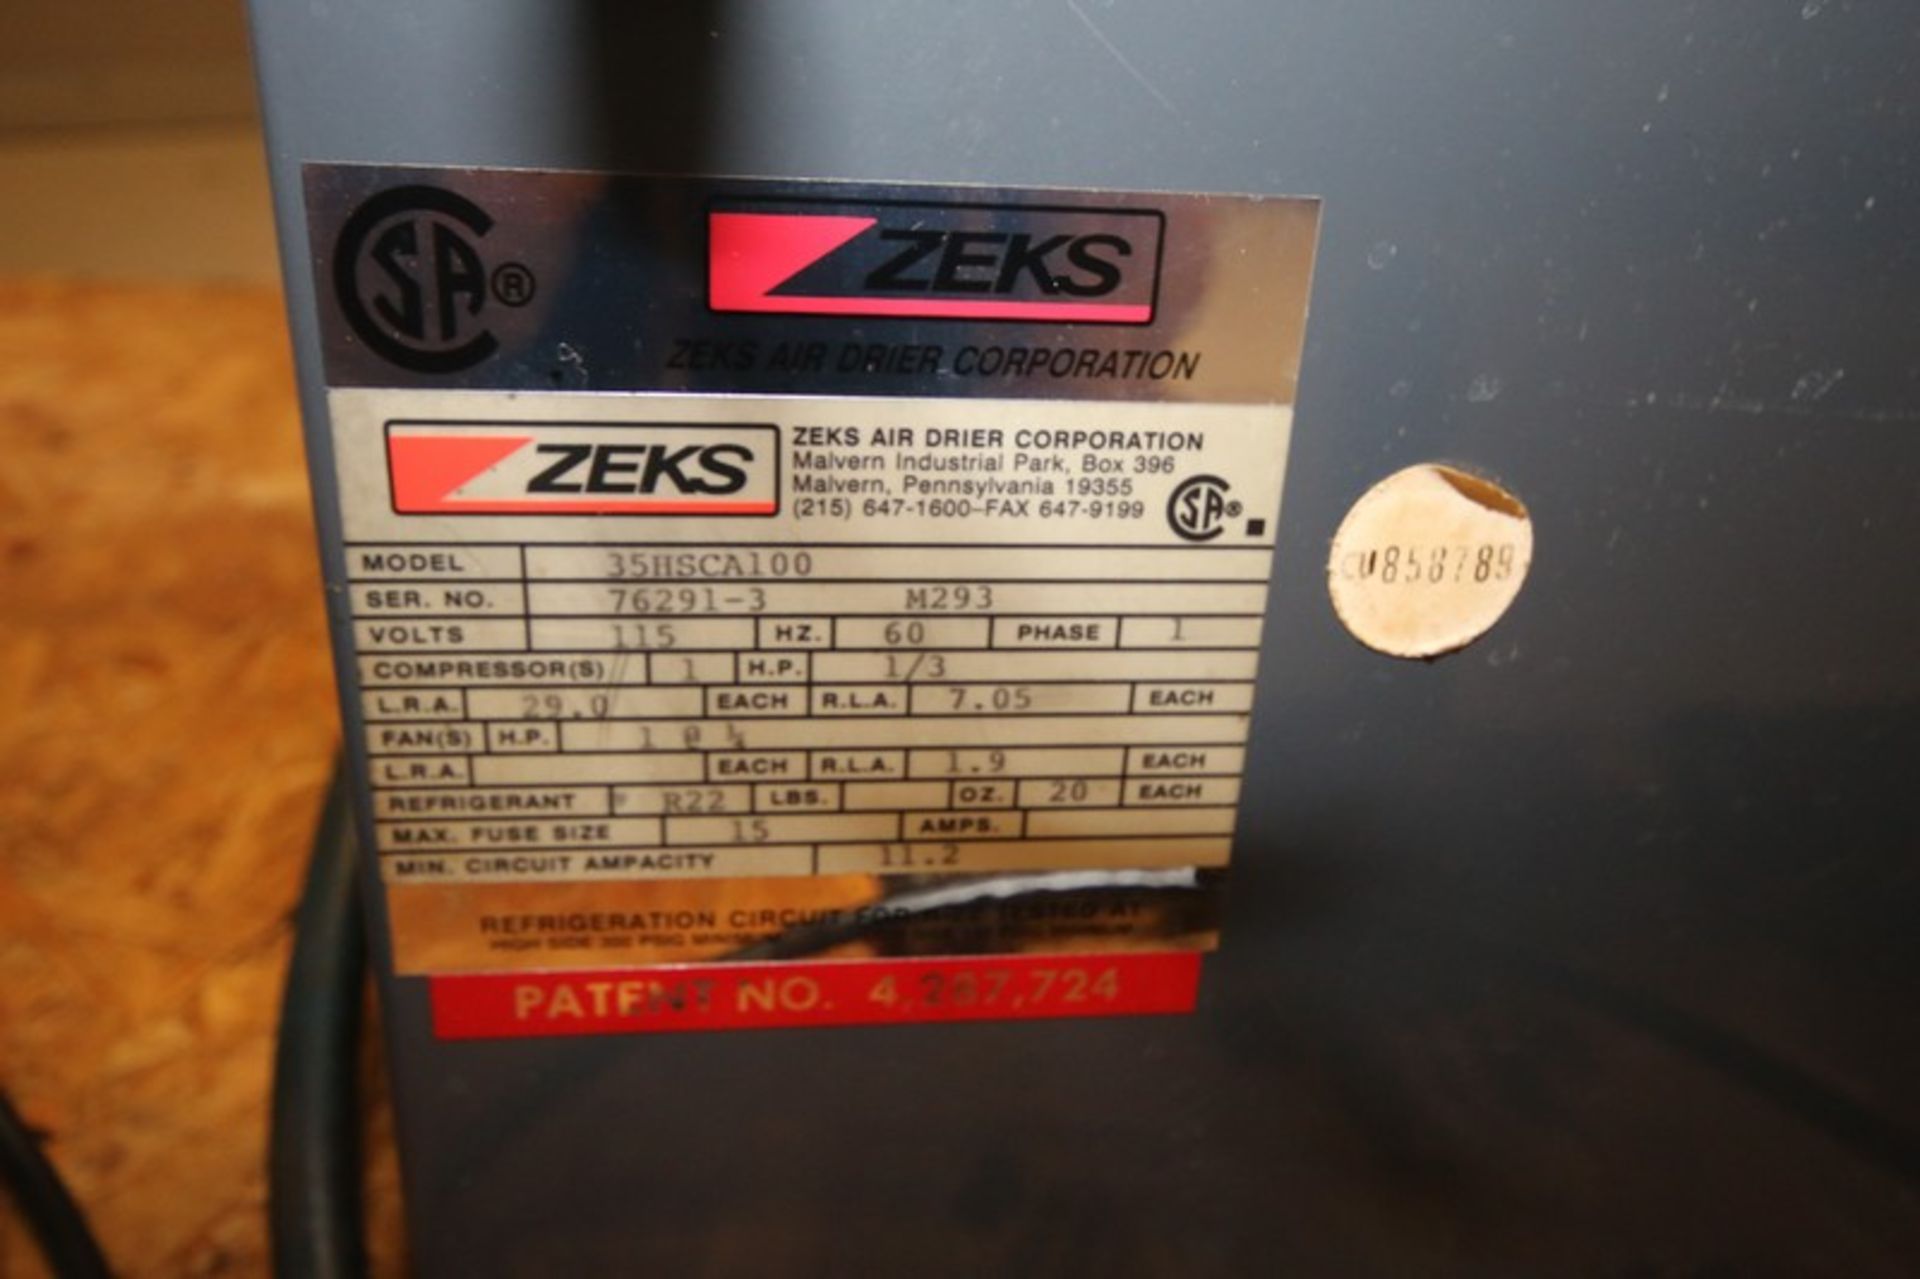 Zeks Refrigerated Air Dryer, Model 35HSCA100, SN 76291-3, r22, 115V, with Zeks Ez Drain & Filter ( - Image 3 of 3